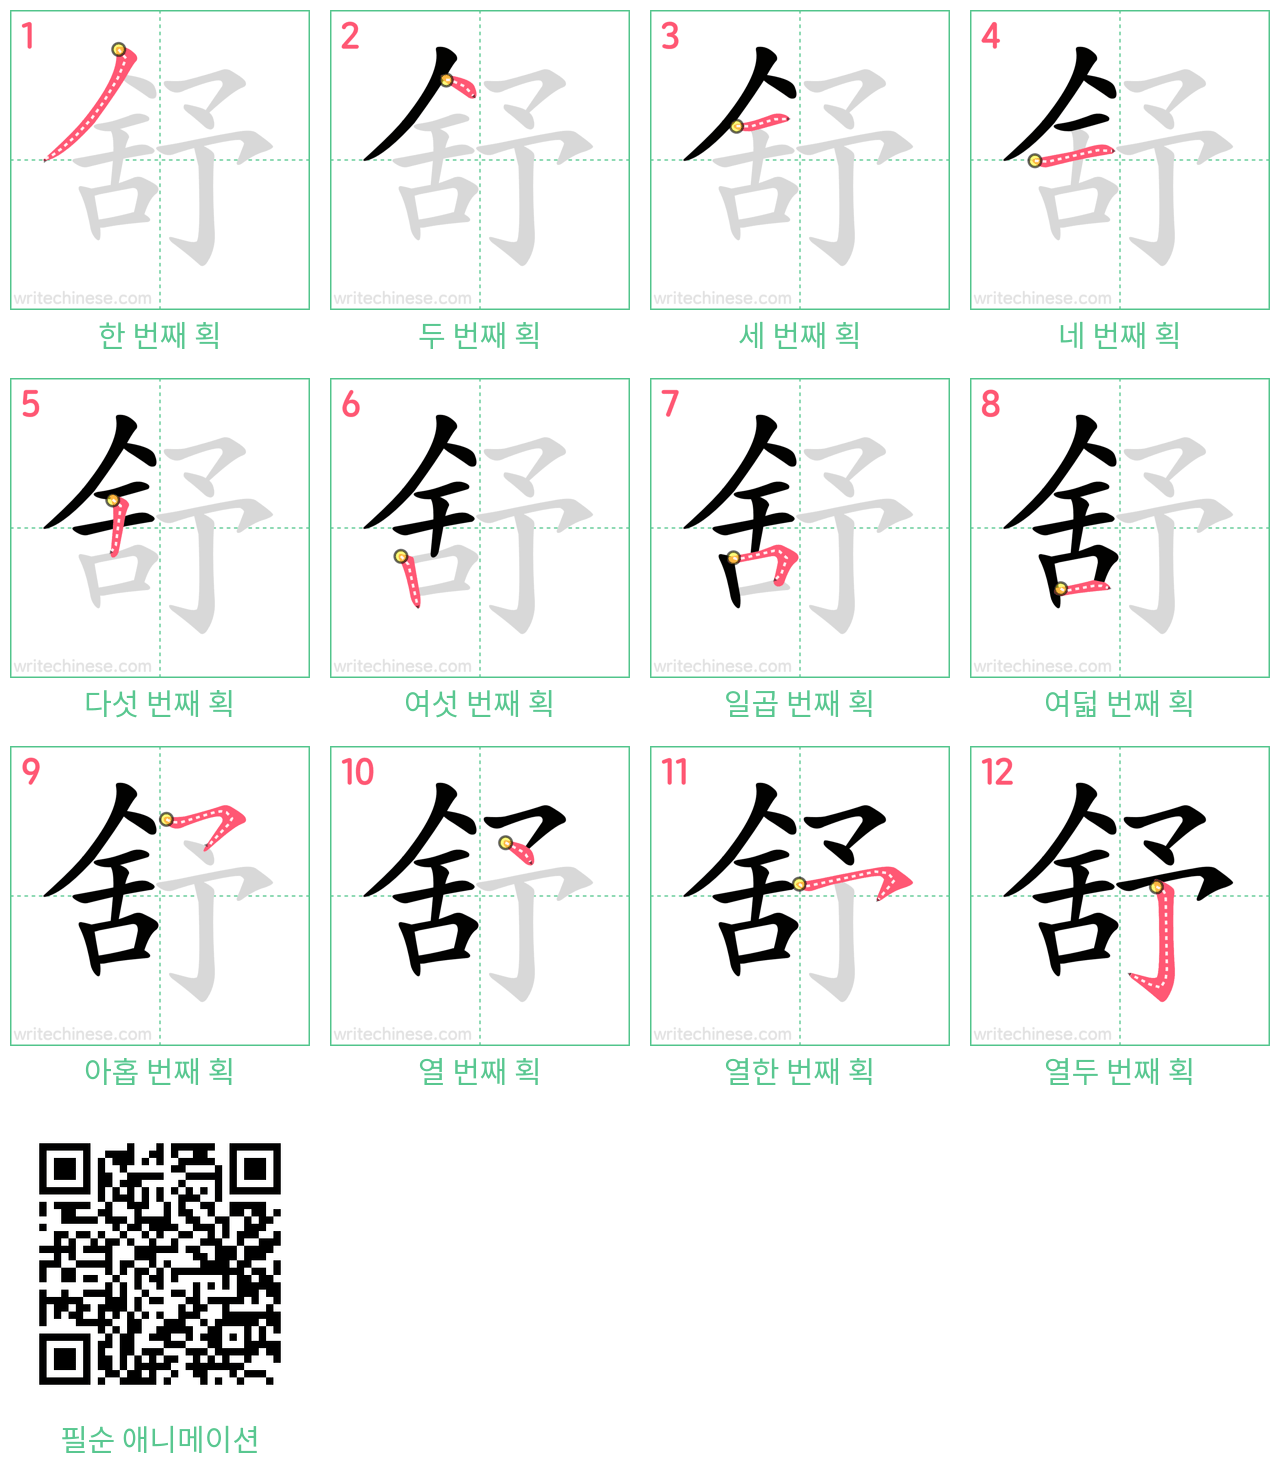 舒 step-by-step stroke order diagrams